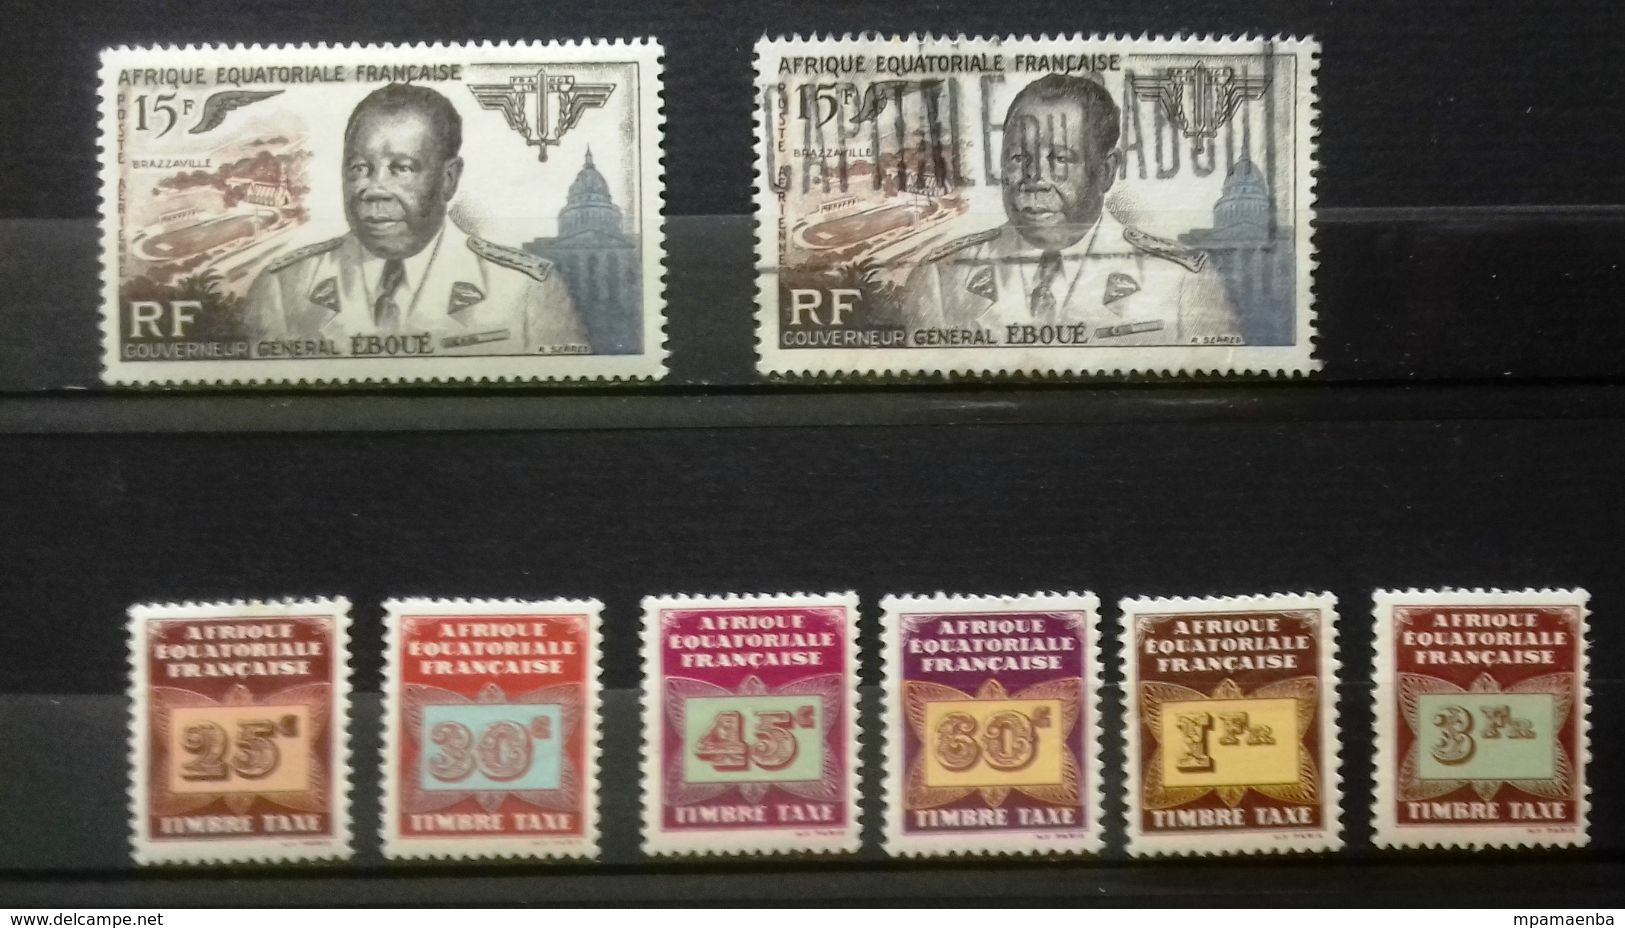 Colonies françaises, bon lot de timbres principalement Neufs * * (MNH) et oblitérés.